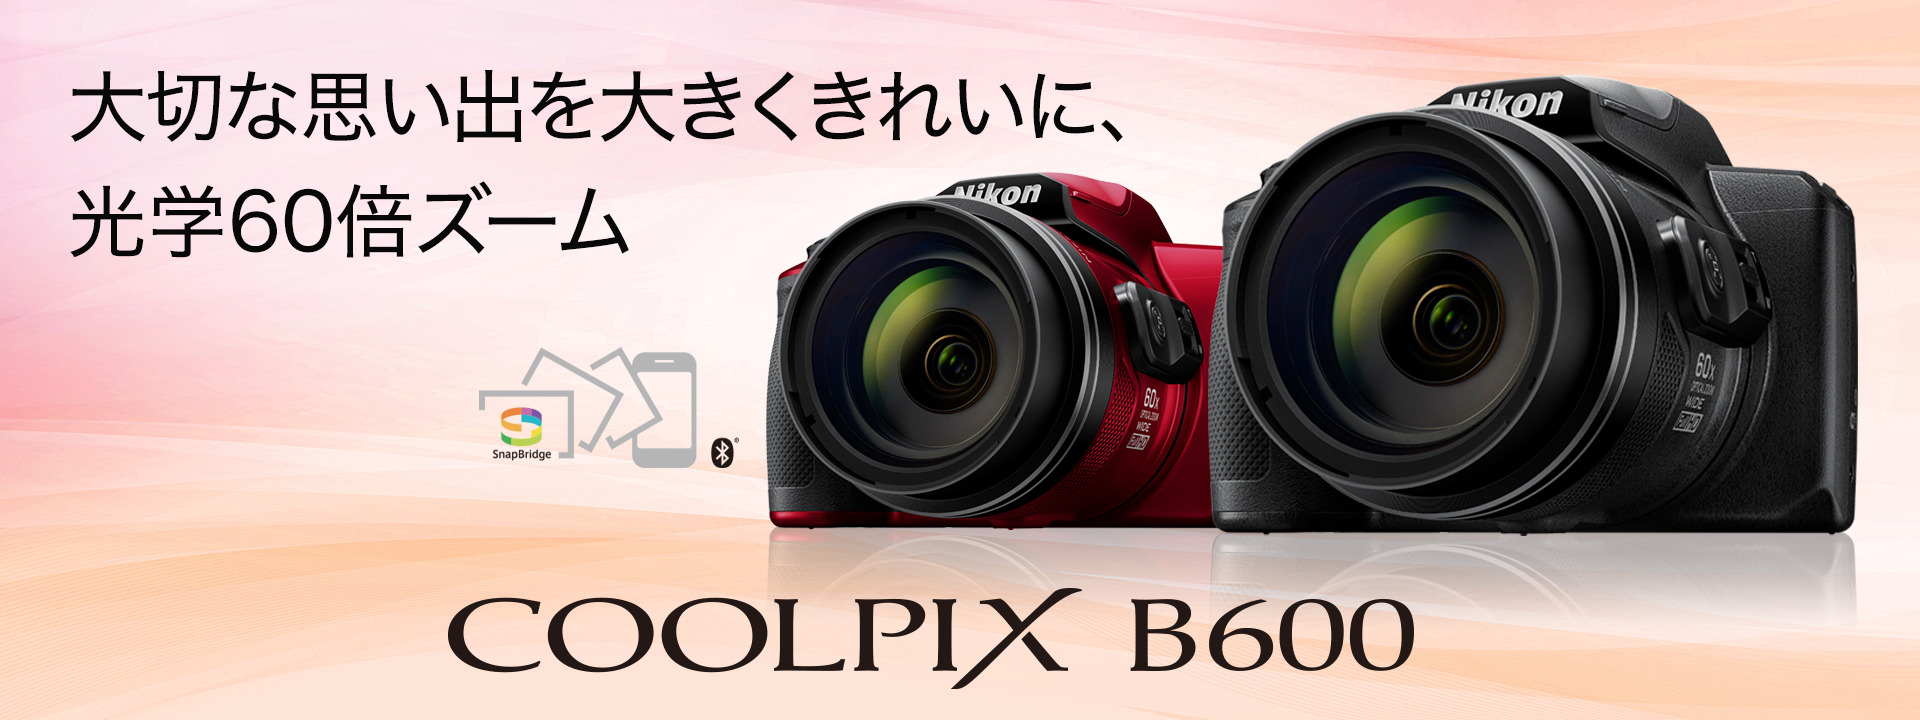 COOLPIX B600